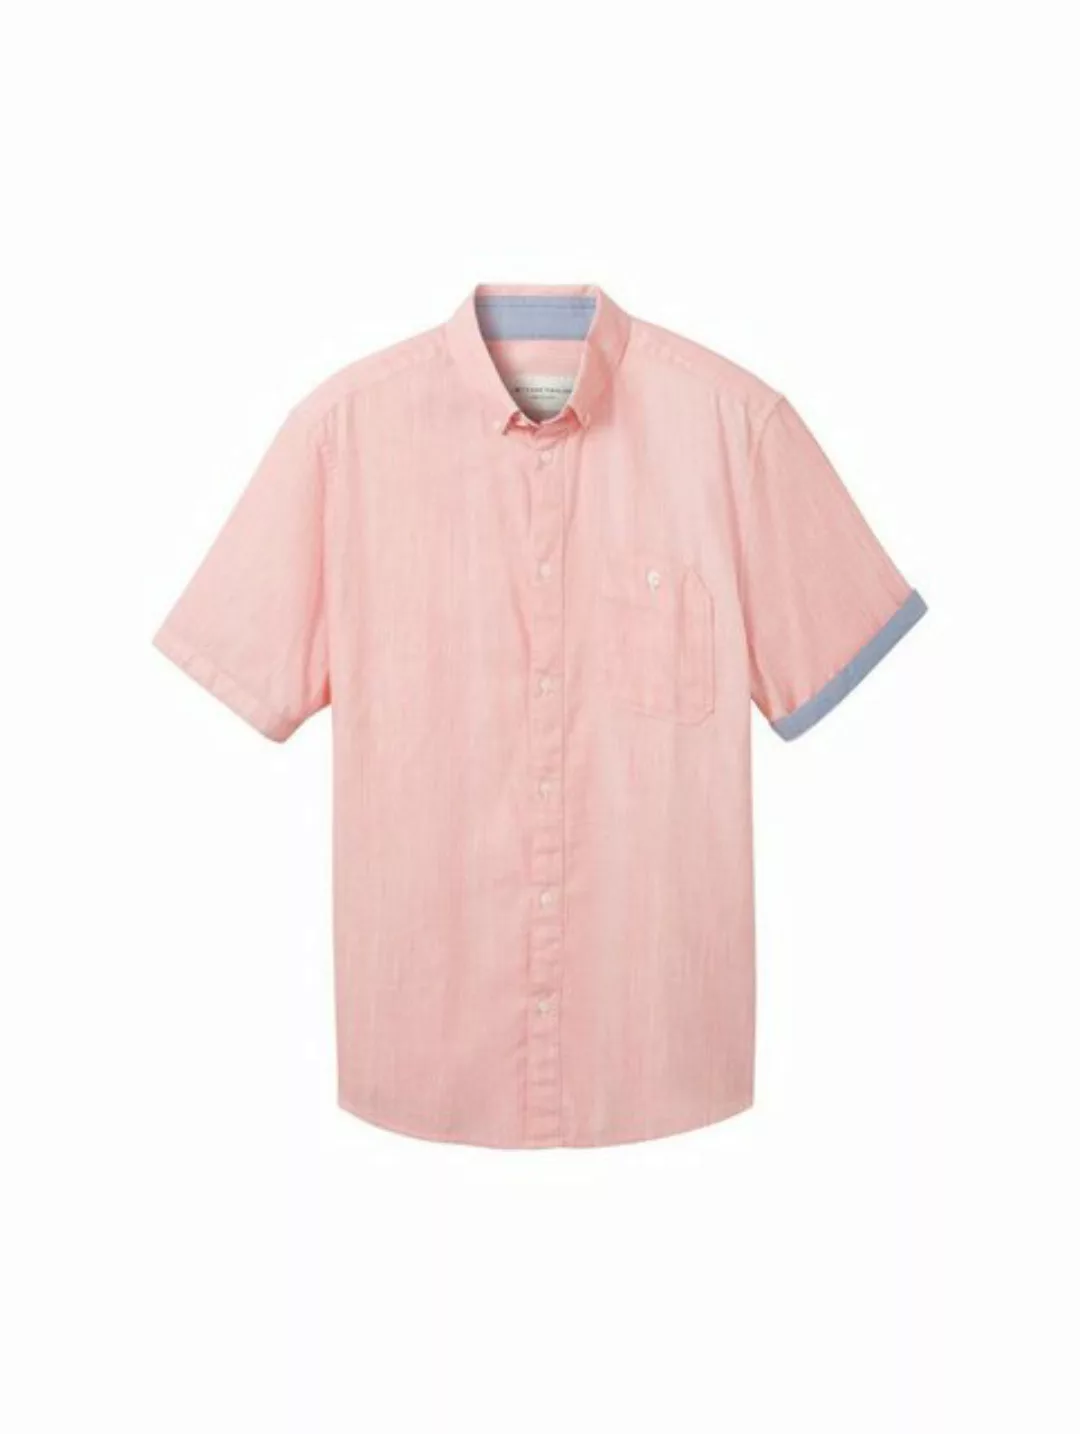 TOM TAILOR T-Shirt chambray slubyarn shirt, coral white structure günstig online kaufen